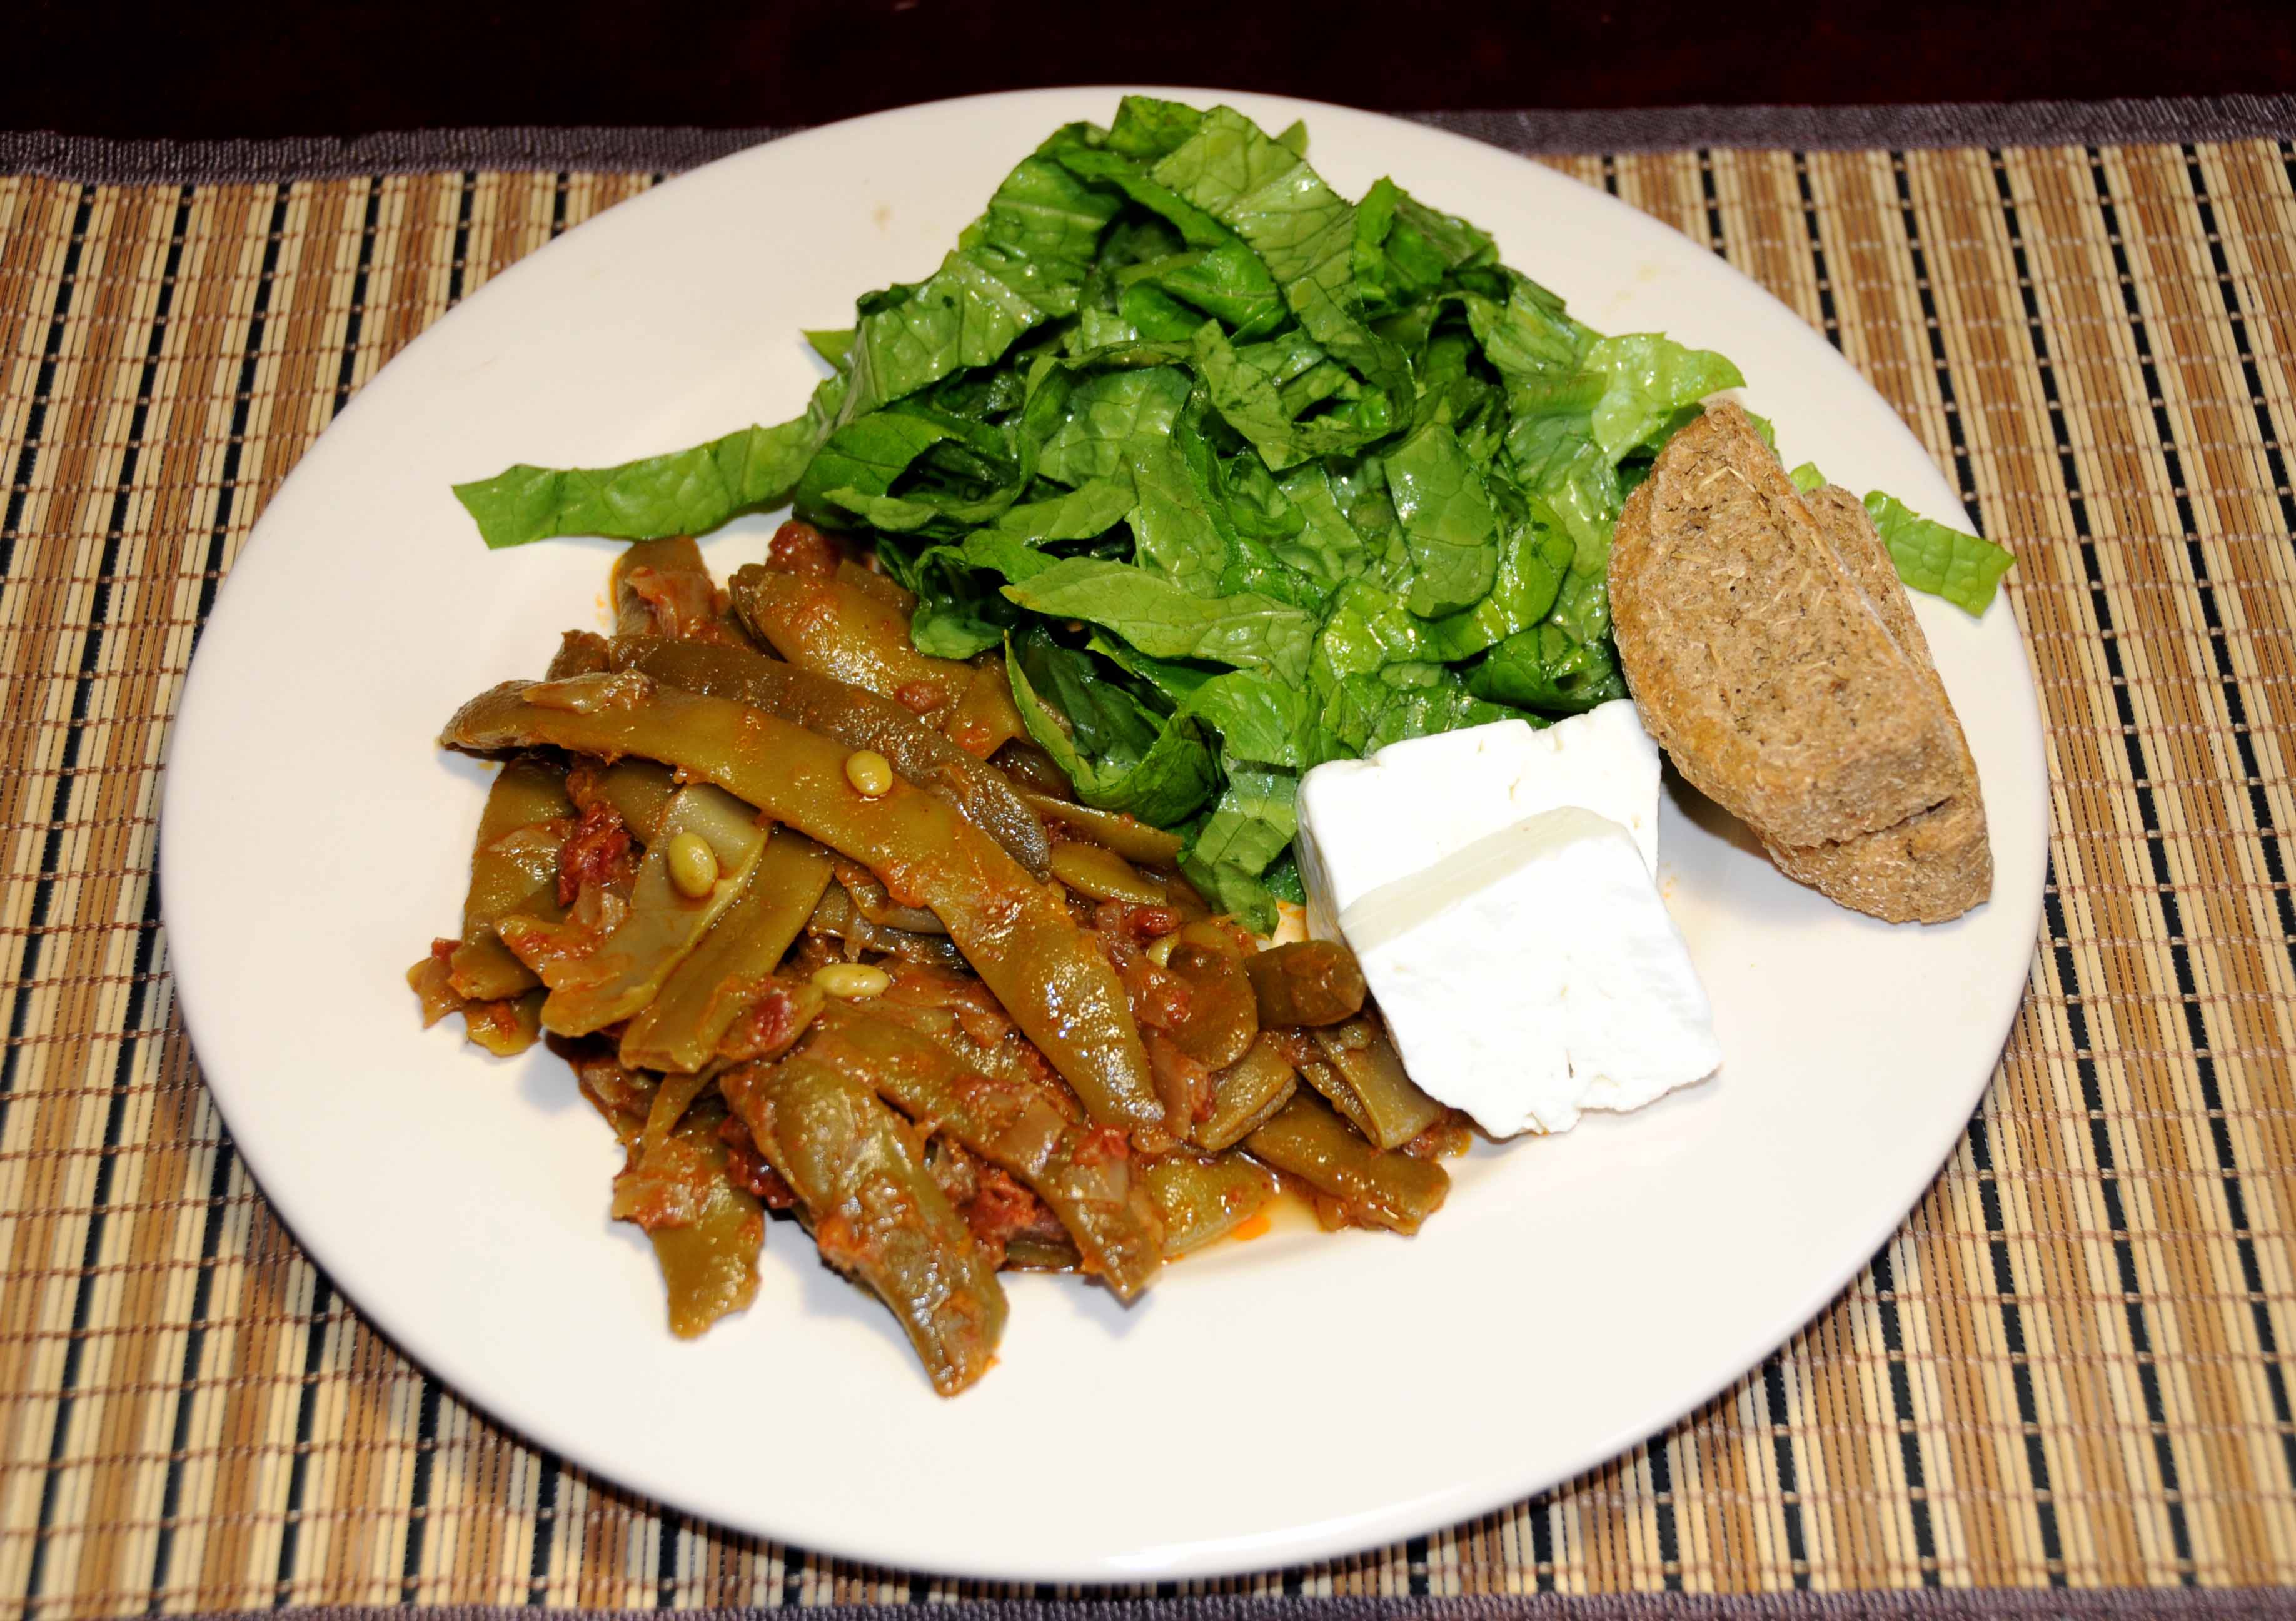 Φασολάκια με φέτα και σαλάτα μαρούλι - Green beans with cheese and lettuce salad